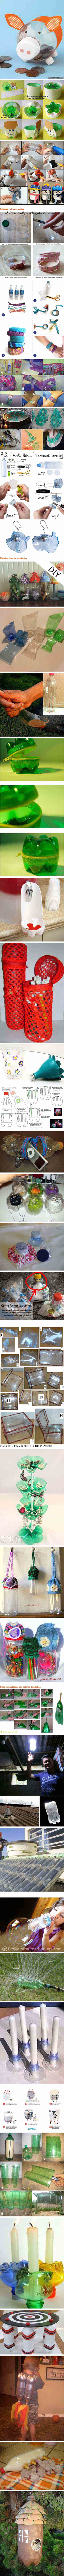 manualidades reciclando botellas de plastico